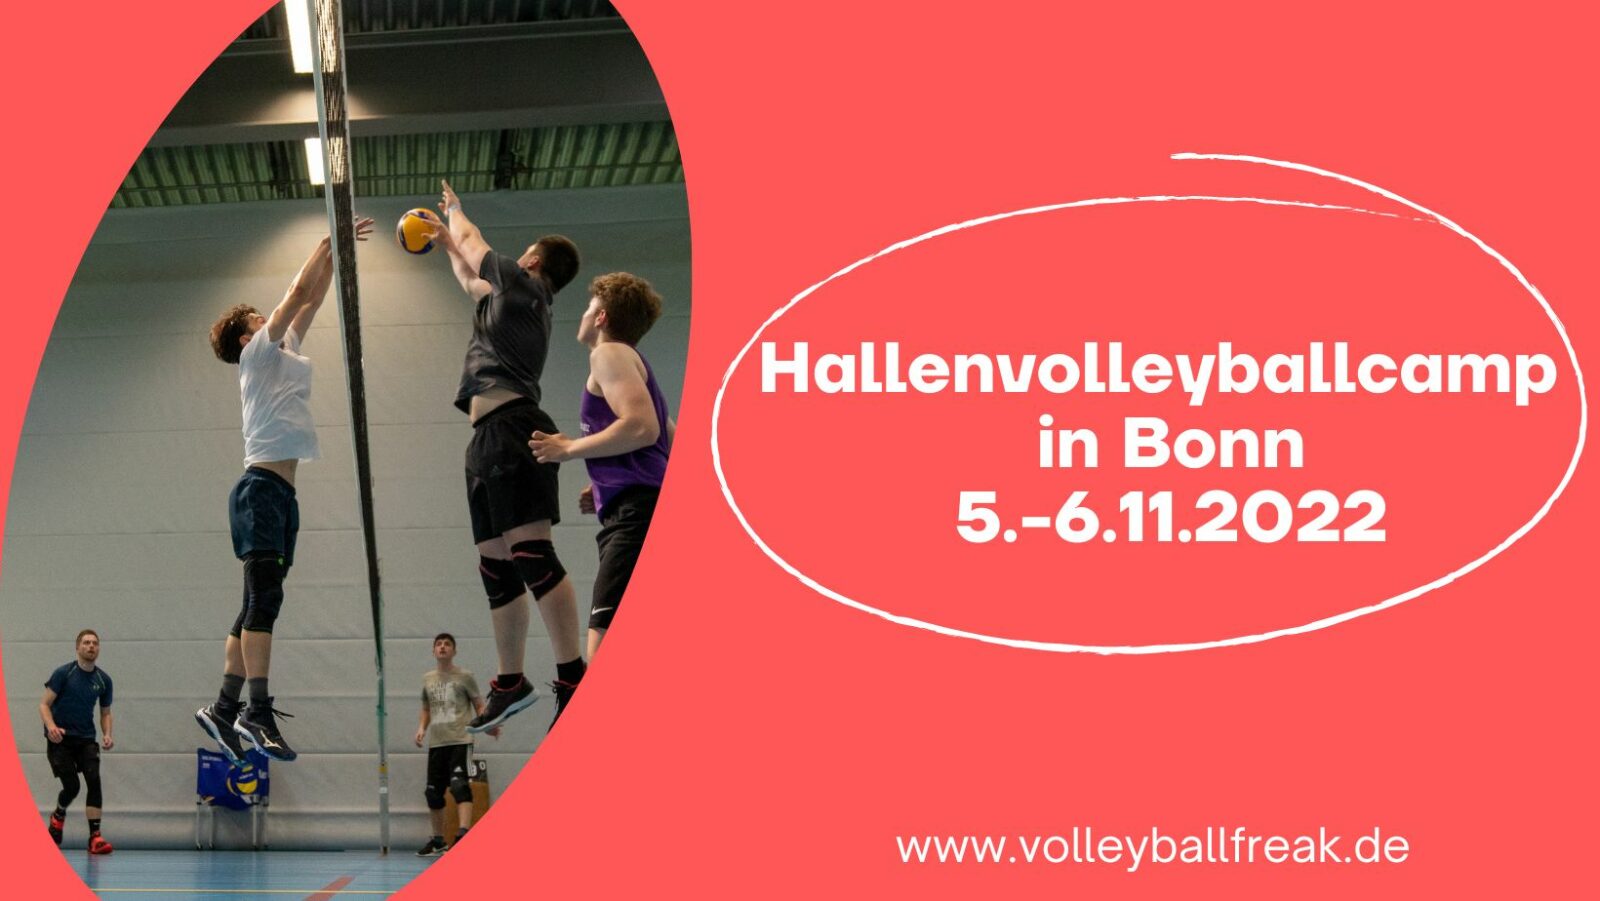 Hallenvolleyballcamp in Bonn vom 5.-6.11.2022